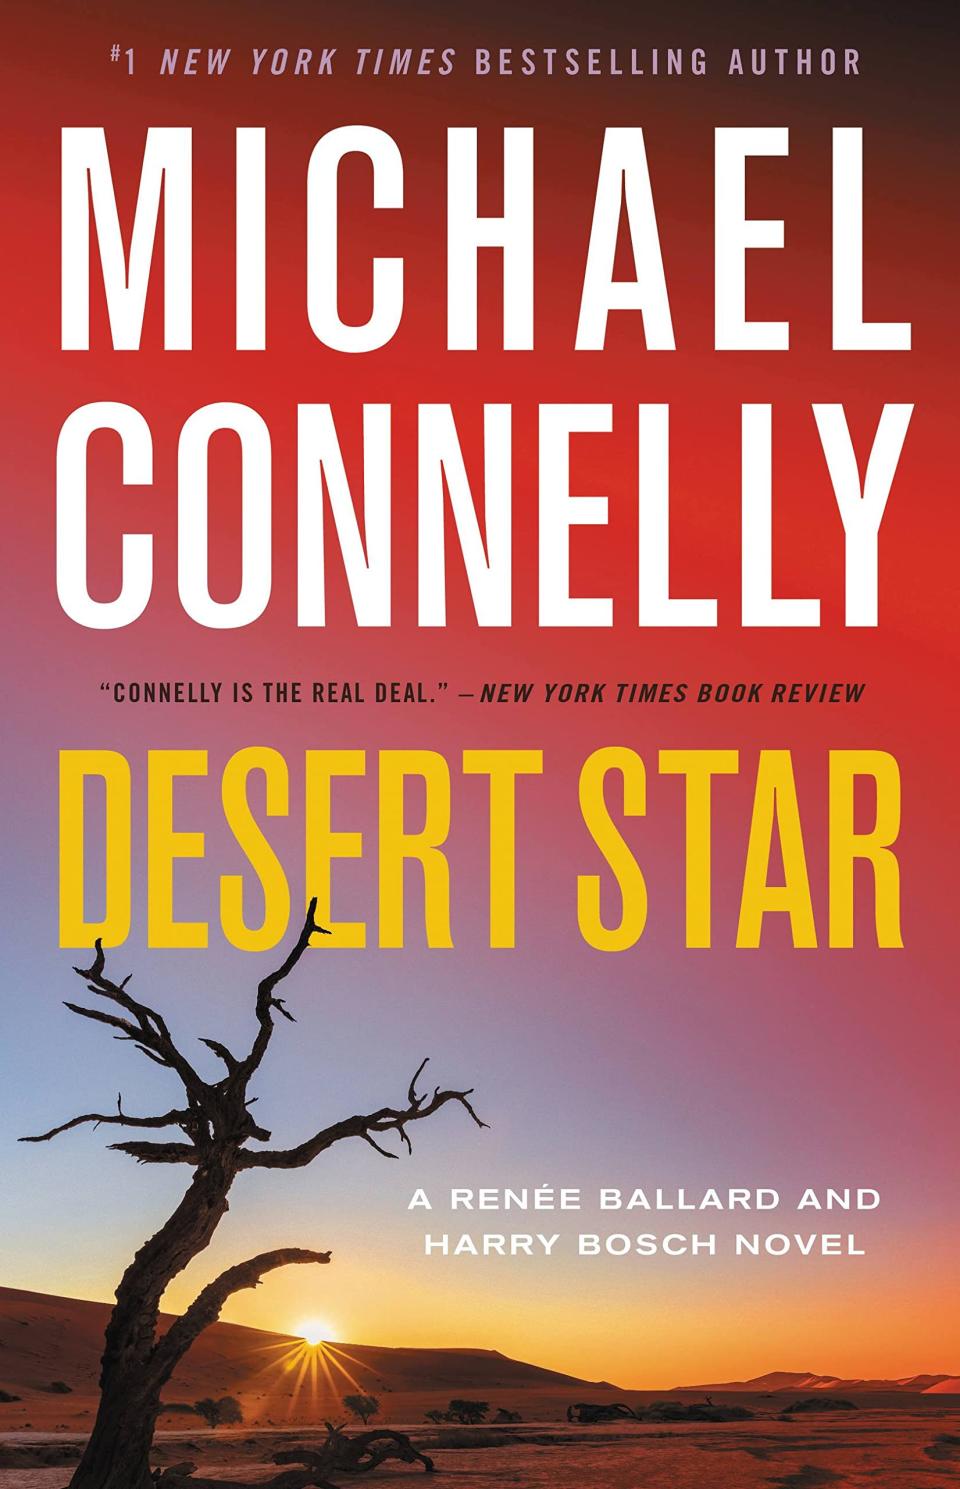 "Desert Star"